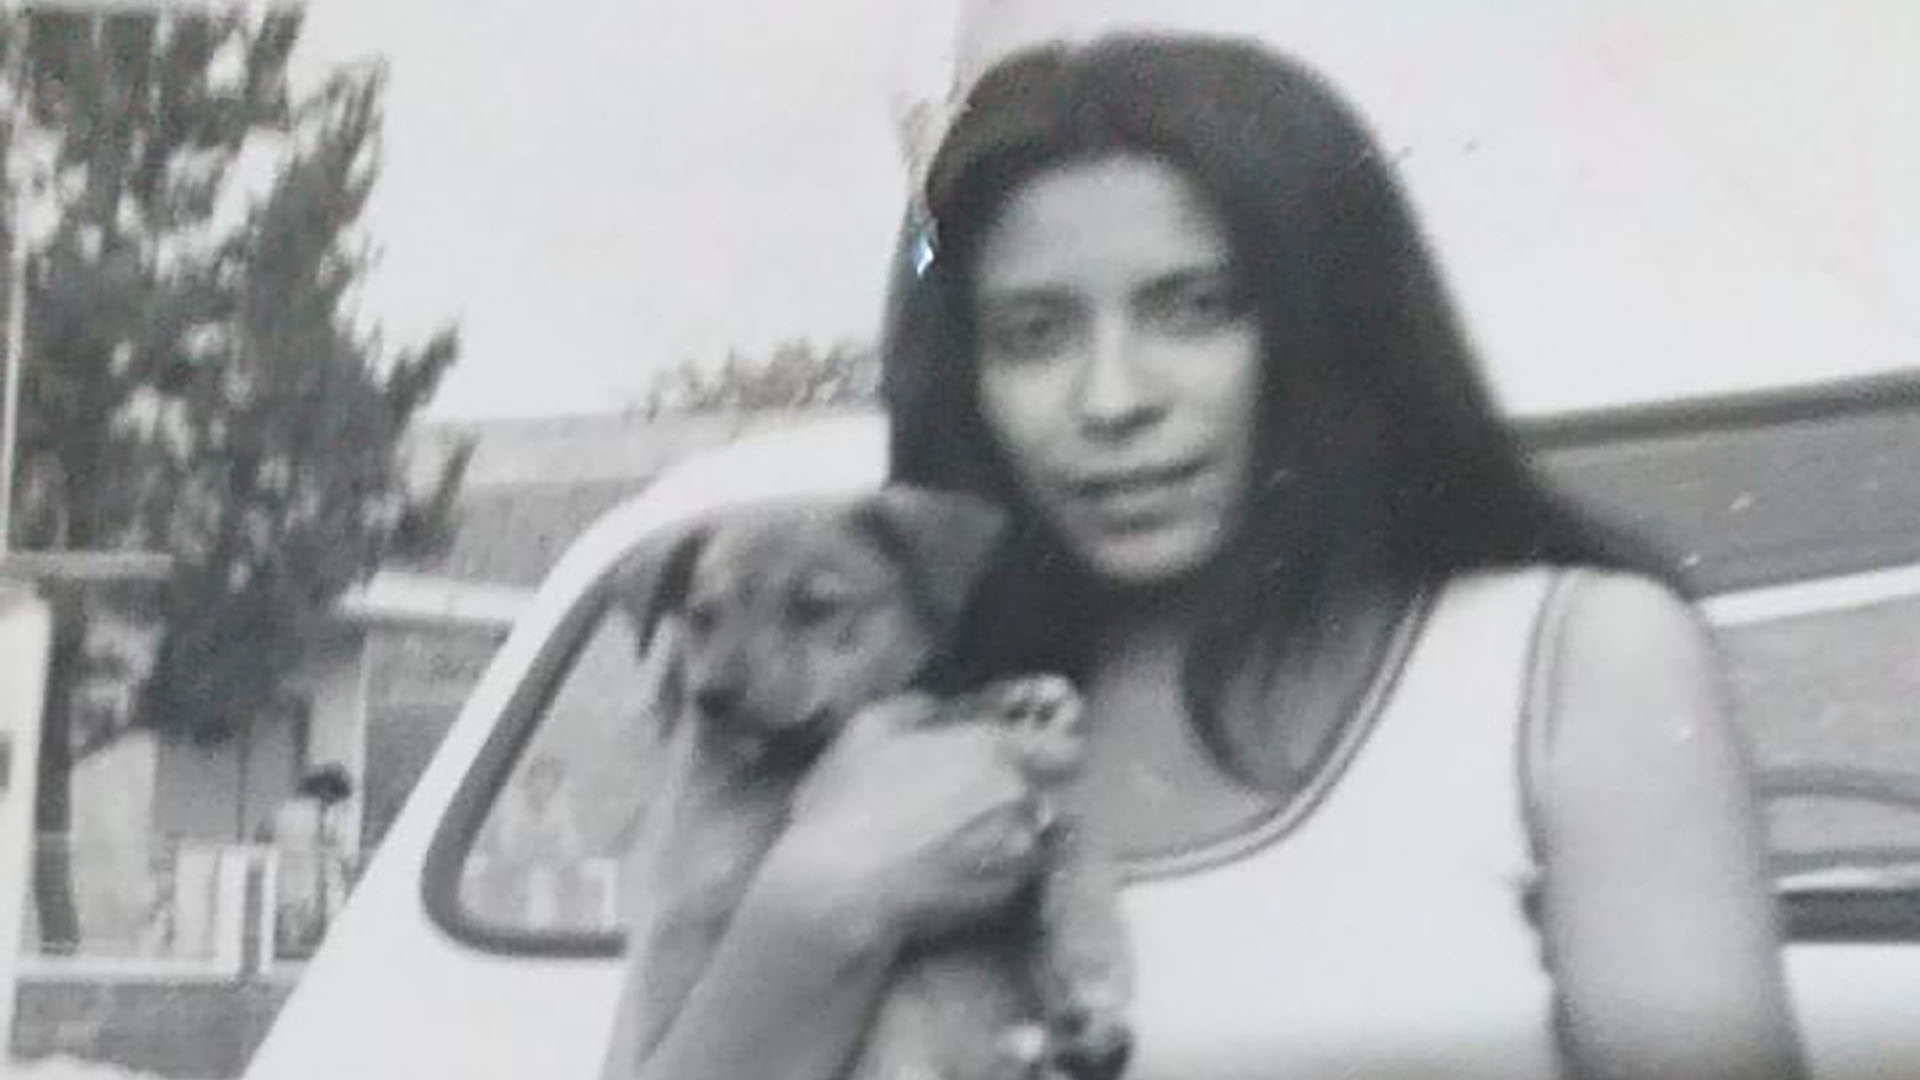 Ana María Maidana apenas unas semanas antes del tornado junto a su mascota, que desapareció con la tragedia